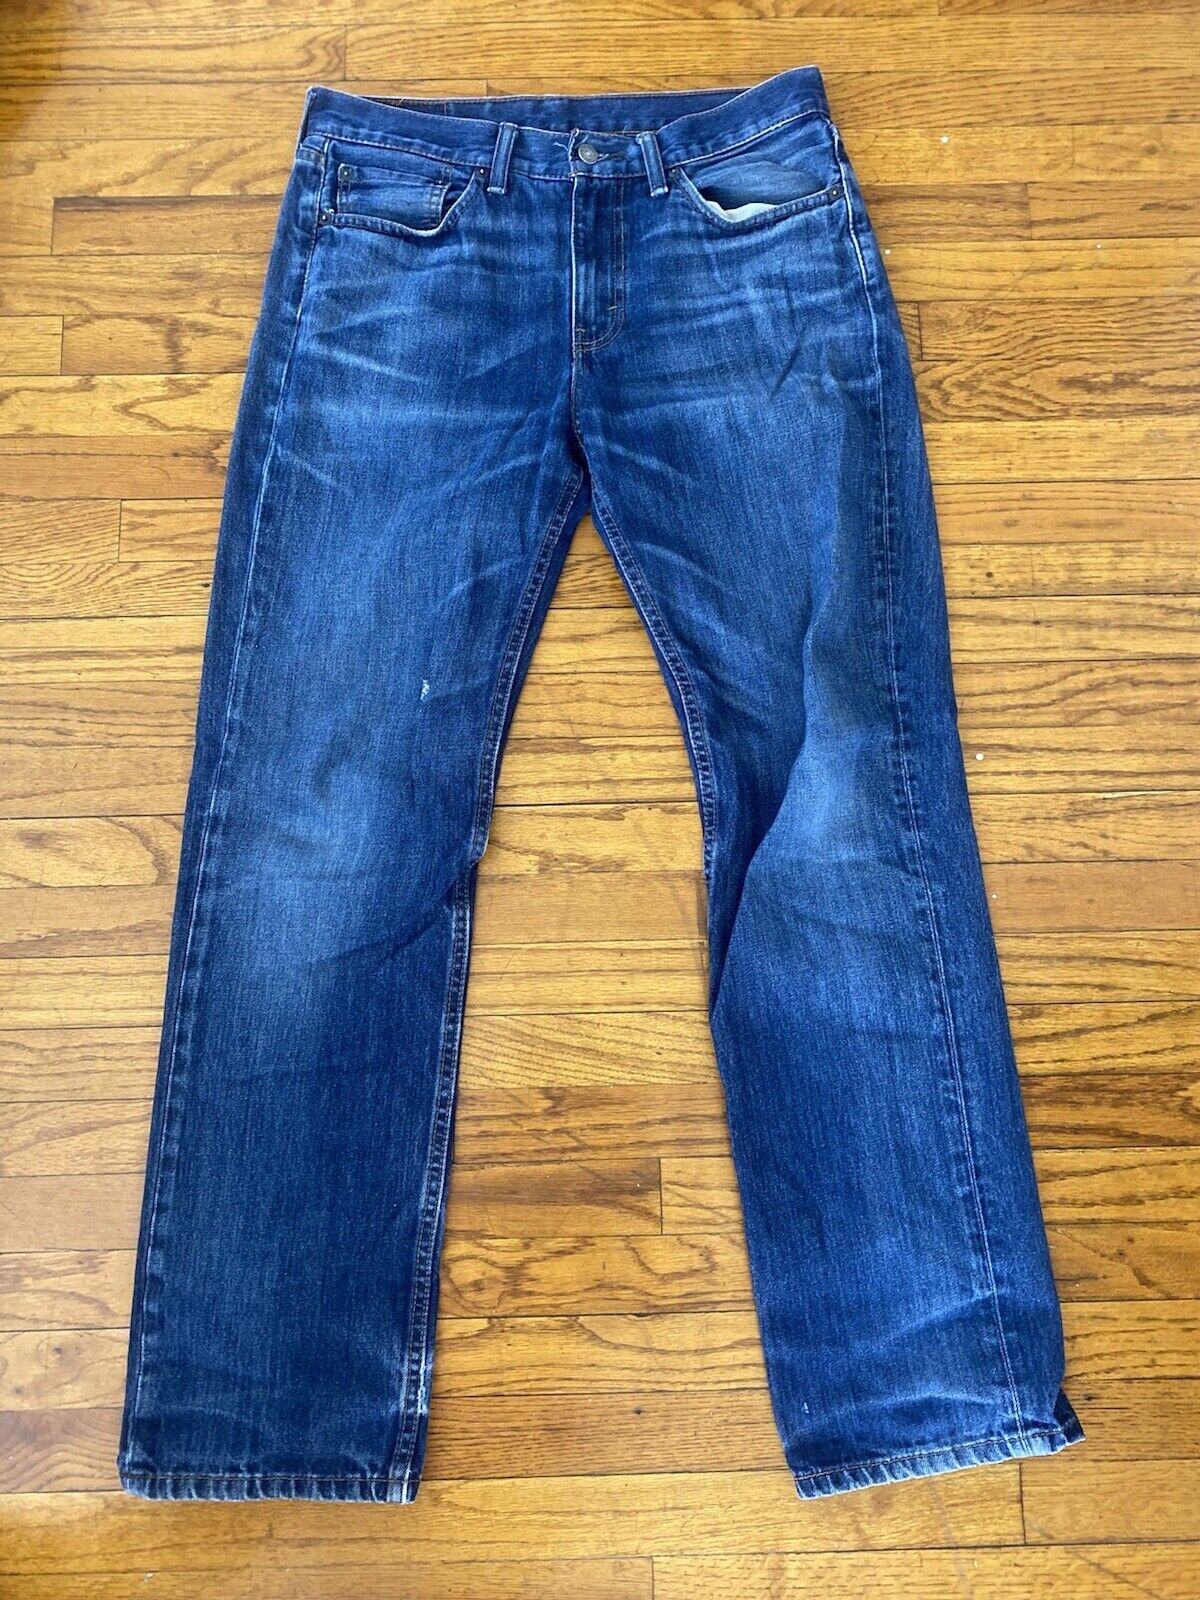 Blue Straight Leg Jeans - Levi’s 514 - 32W x 32L